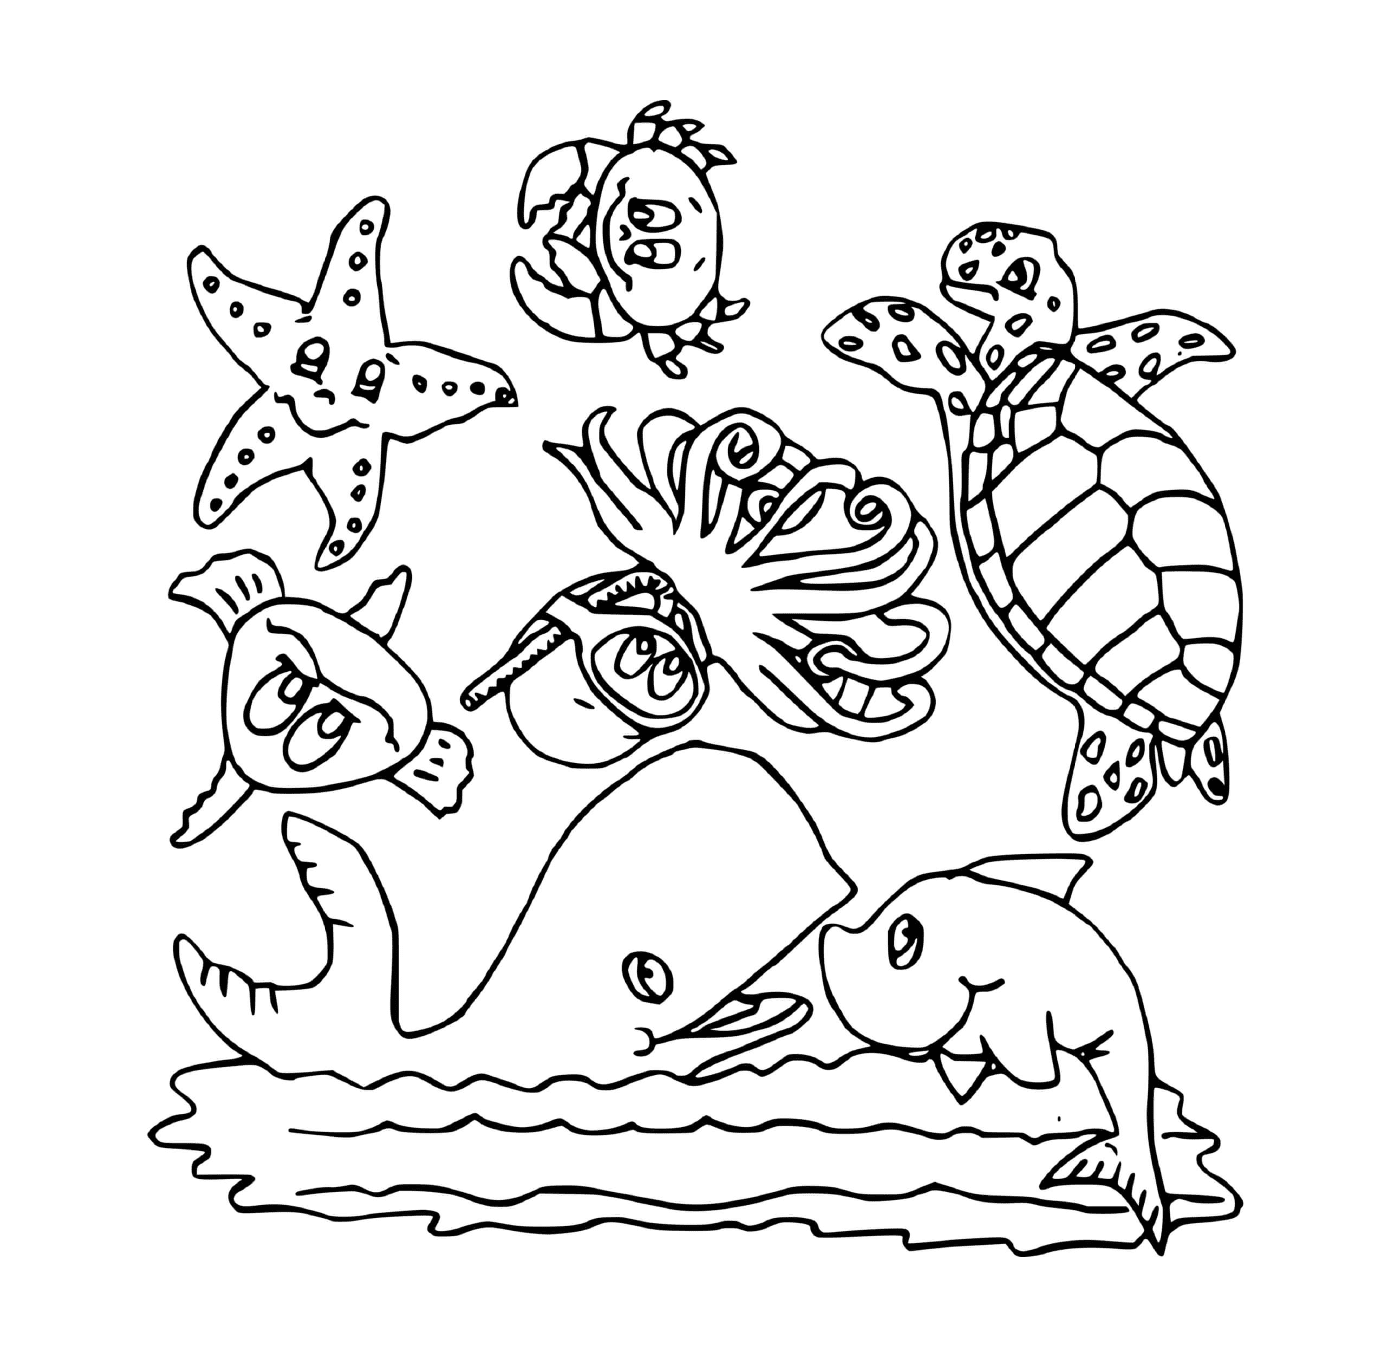   Groupe d'animaux marins dans l'eau 